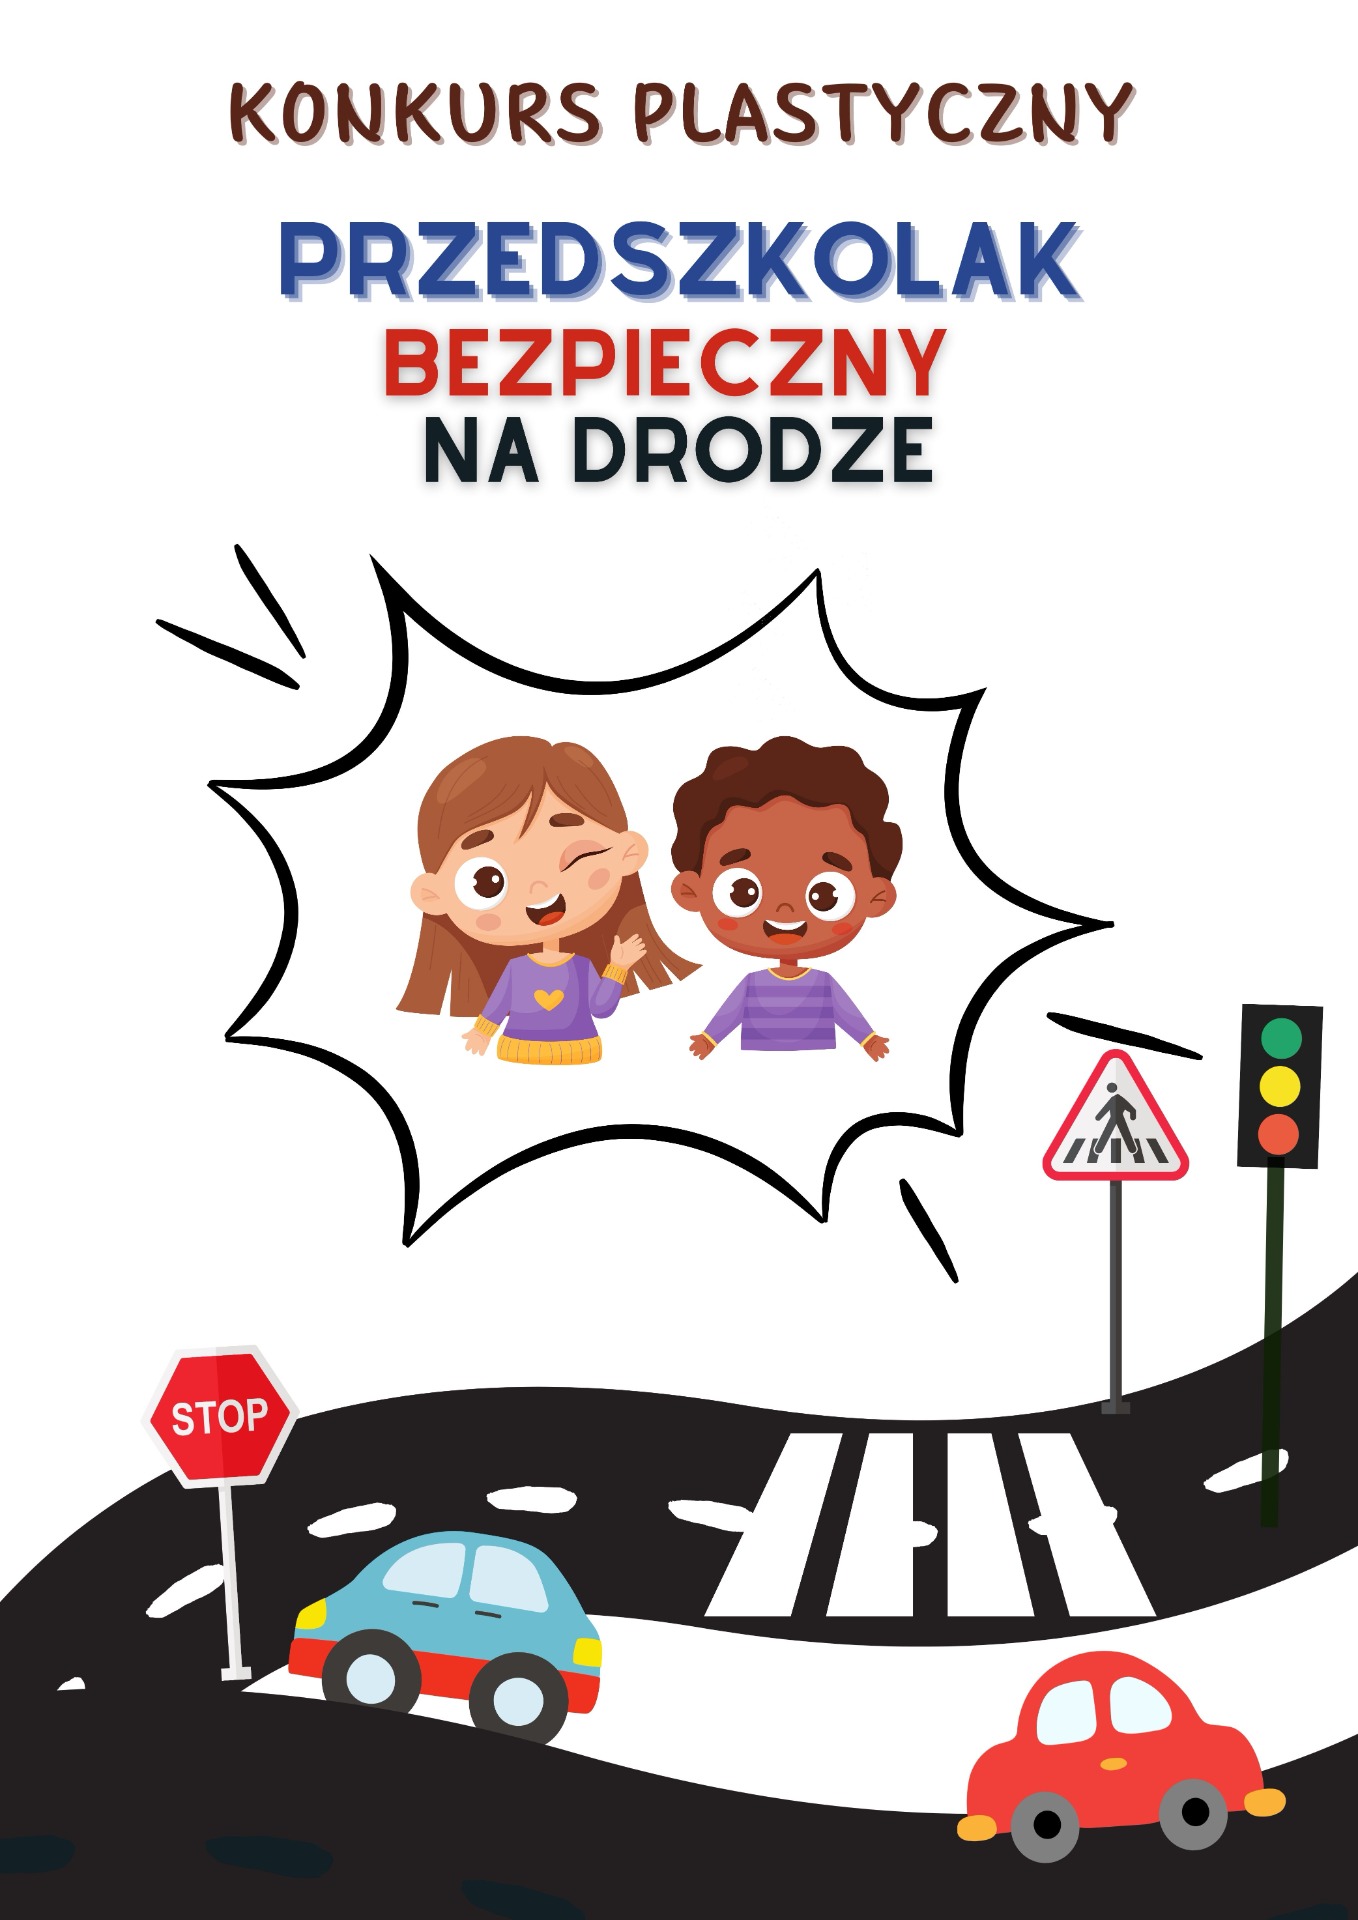 Konkurs "Bezpieczny Przedszkolak na drodze" - Obrazek 1